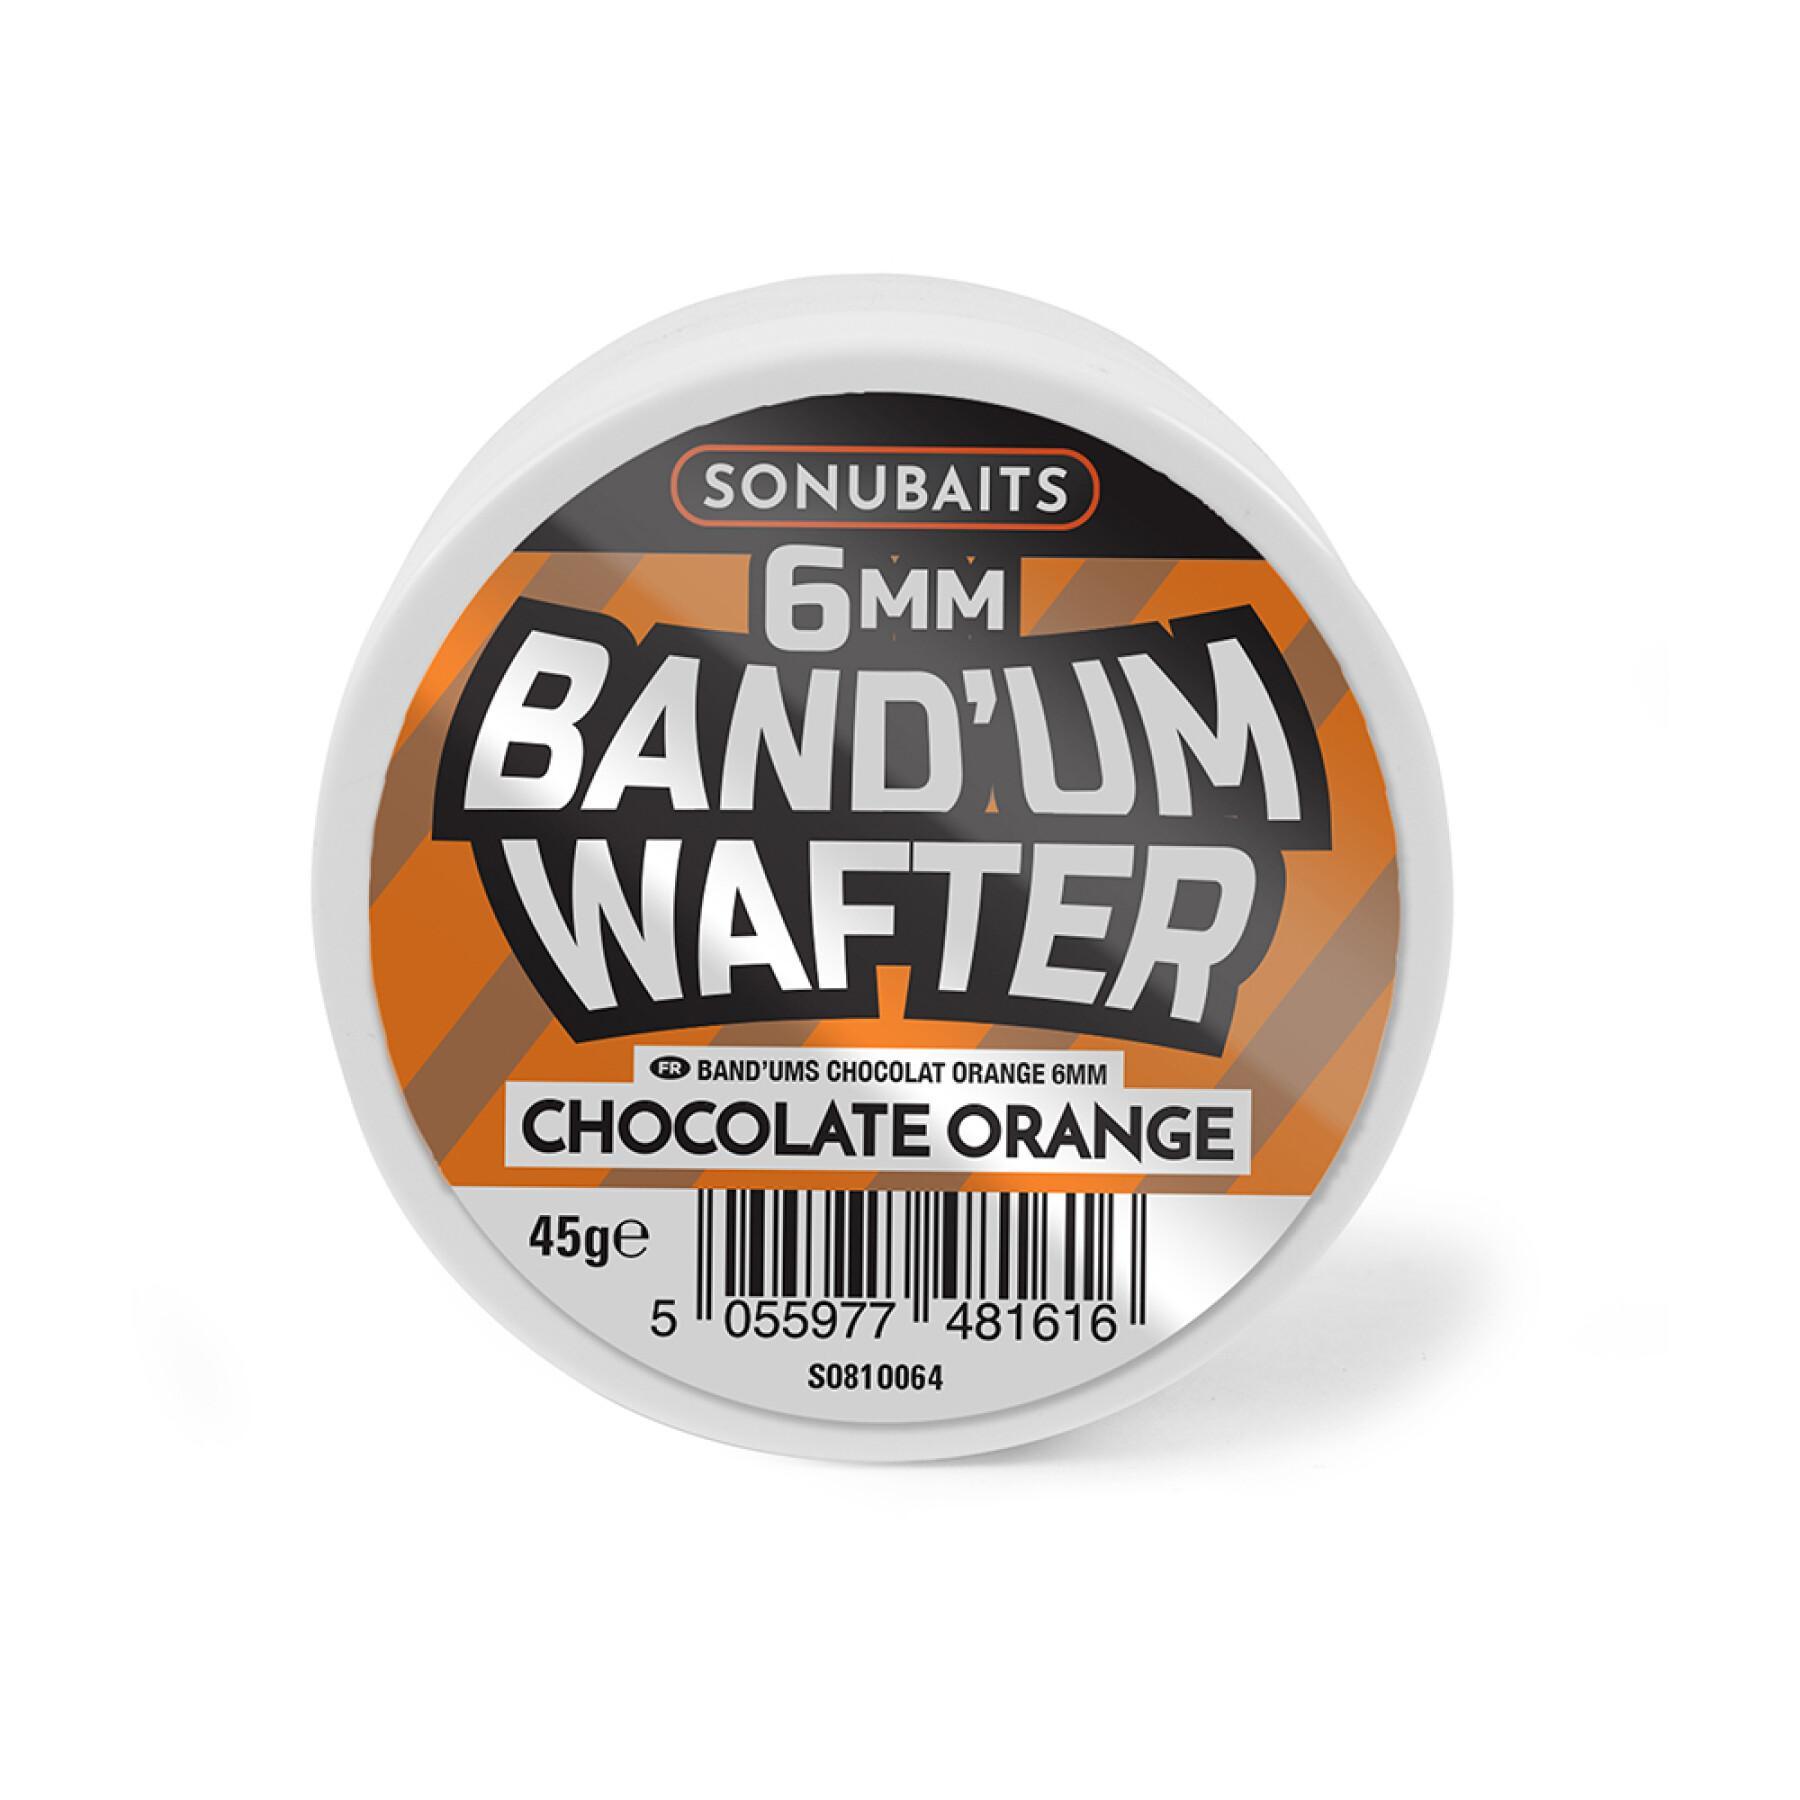 Köder Sonubaits band'um wafters - chocolate orange 1x8